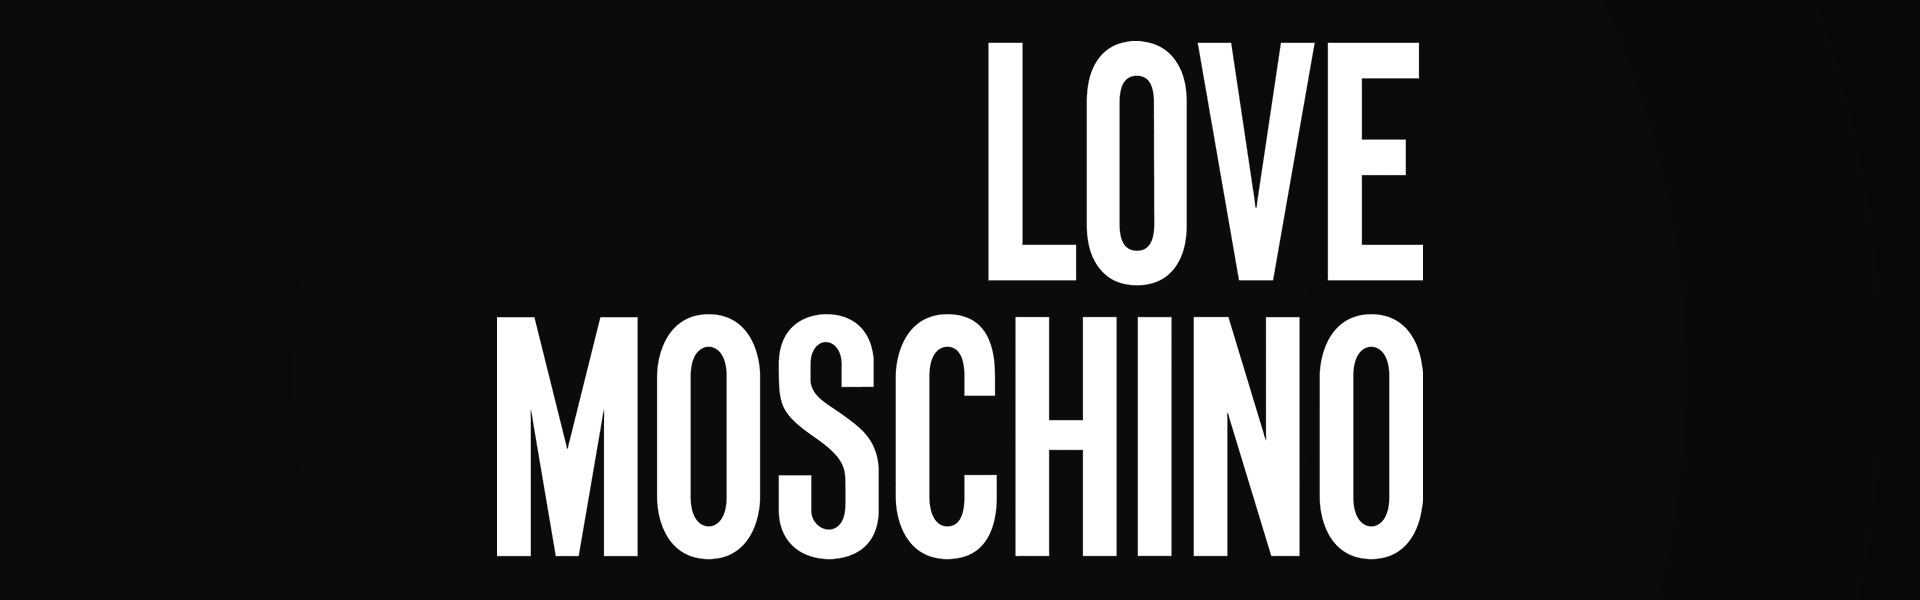 Love Moschino naisten olkalaukku, punainen 